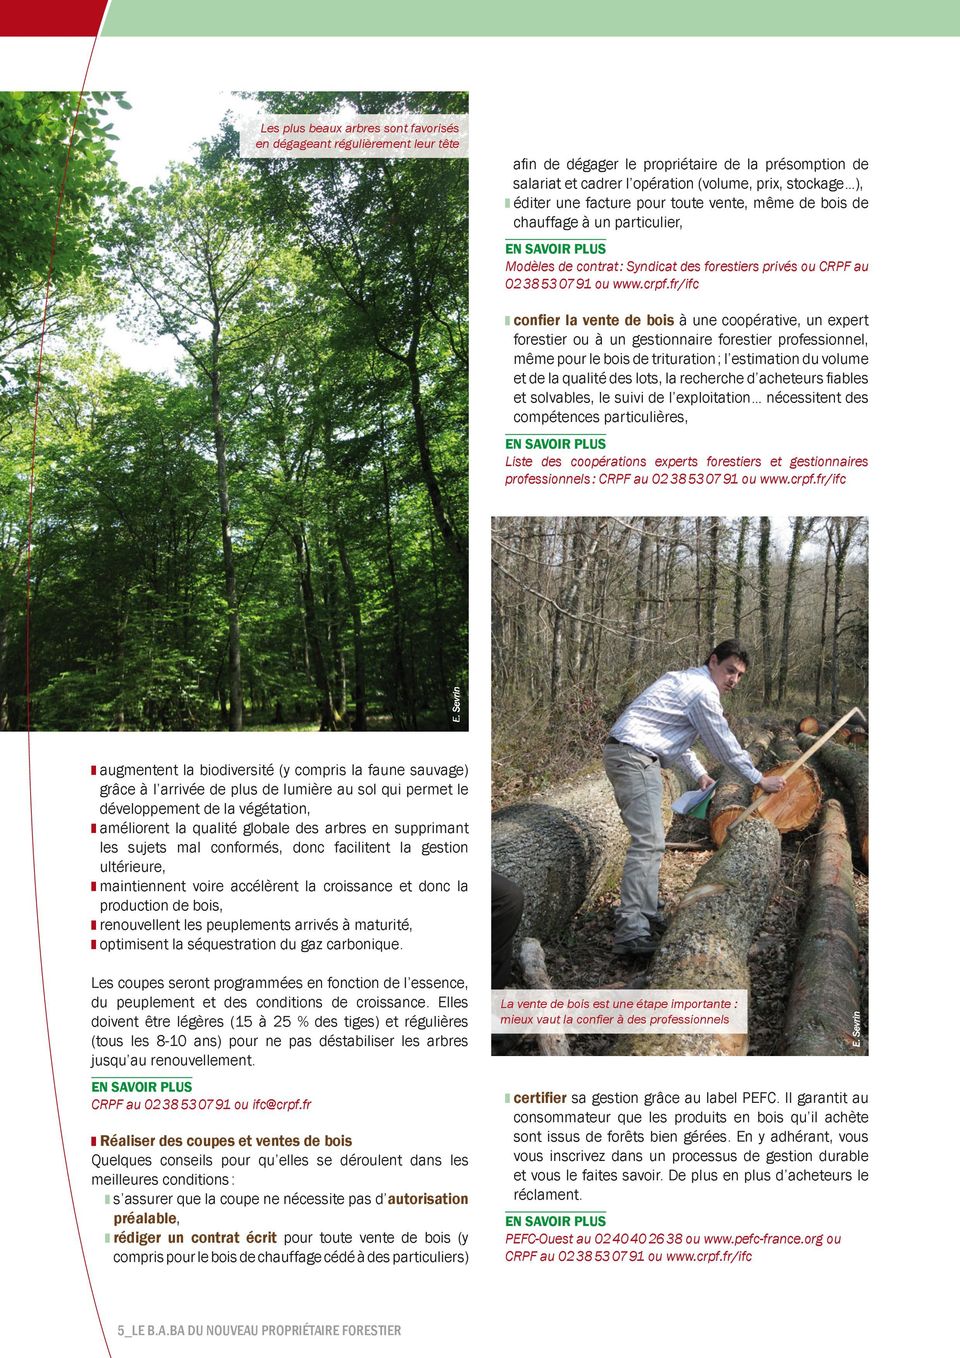 fr/ifc confier la vente de bois à une coopérative, un expert forestier ou à un gestionnaire forestier professionnel, même pour le bois de trituration ; l estimation du volume et de la qualité des